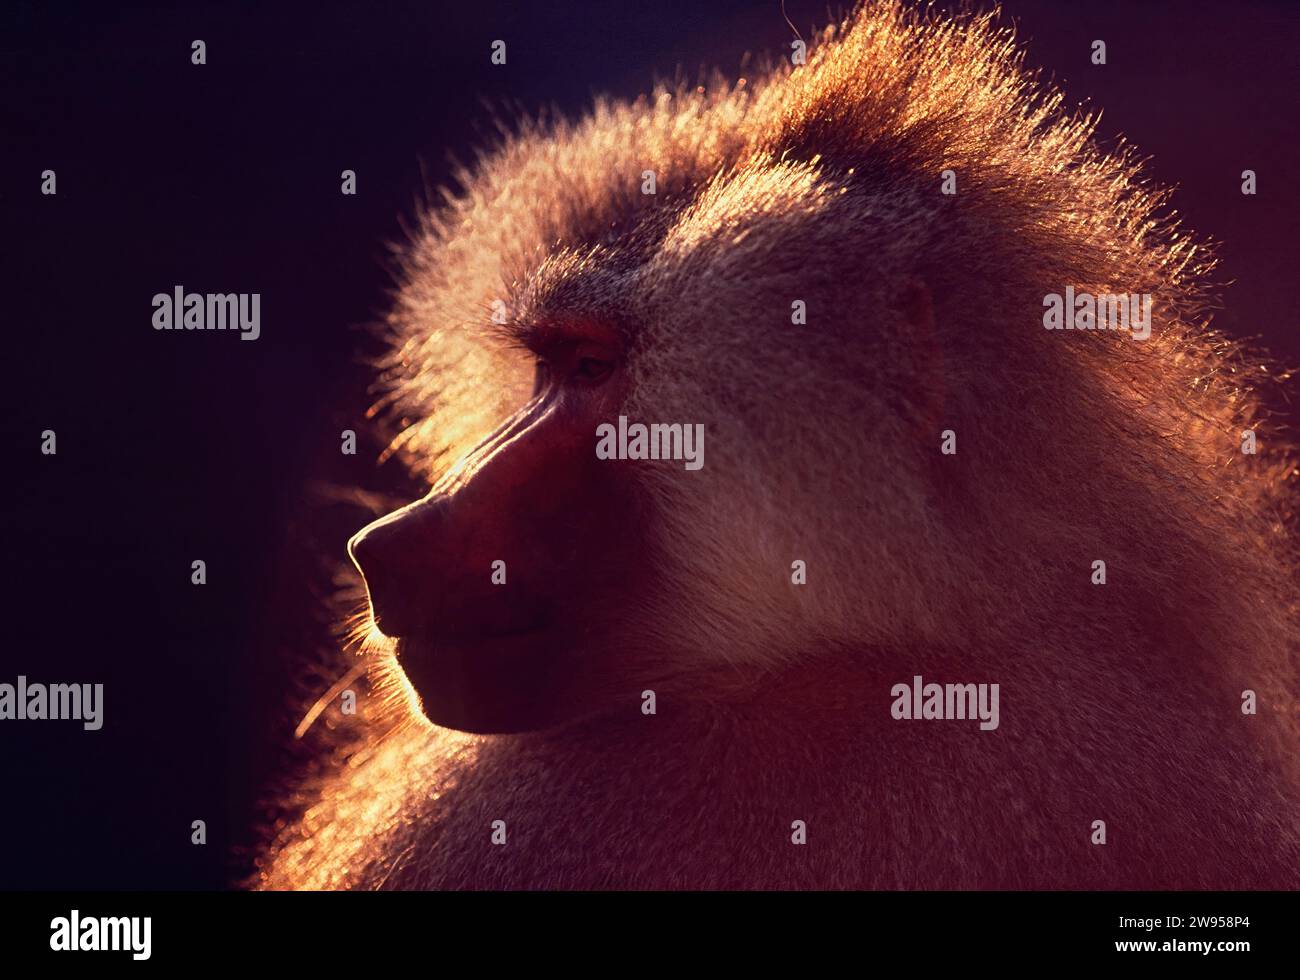 Tête de babouin Hamadryas rétro-éclairée par le soleil Arabie Saoudite Banque D'Images